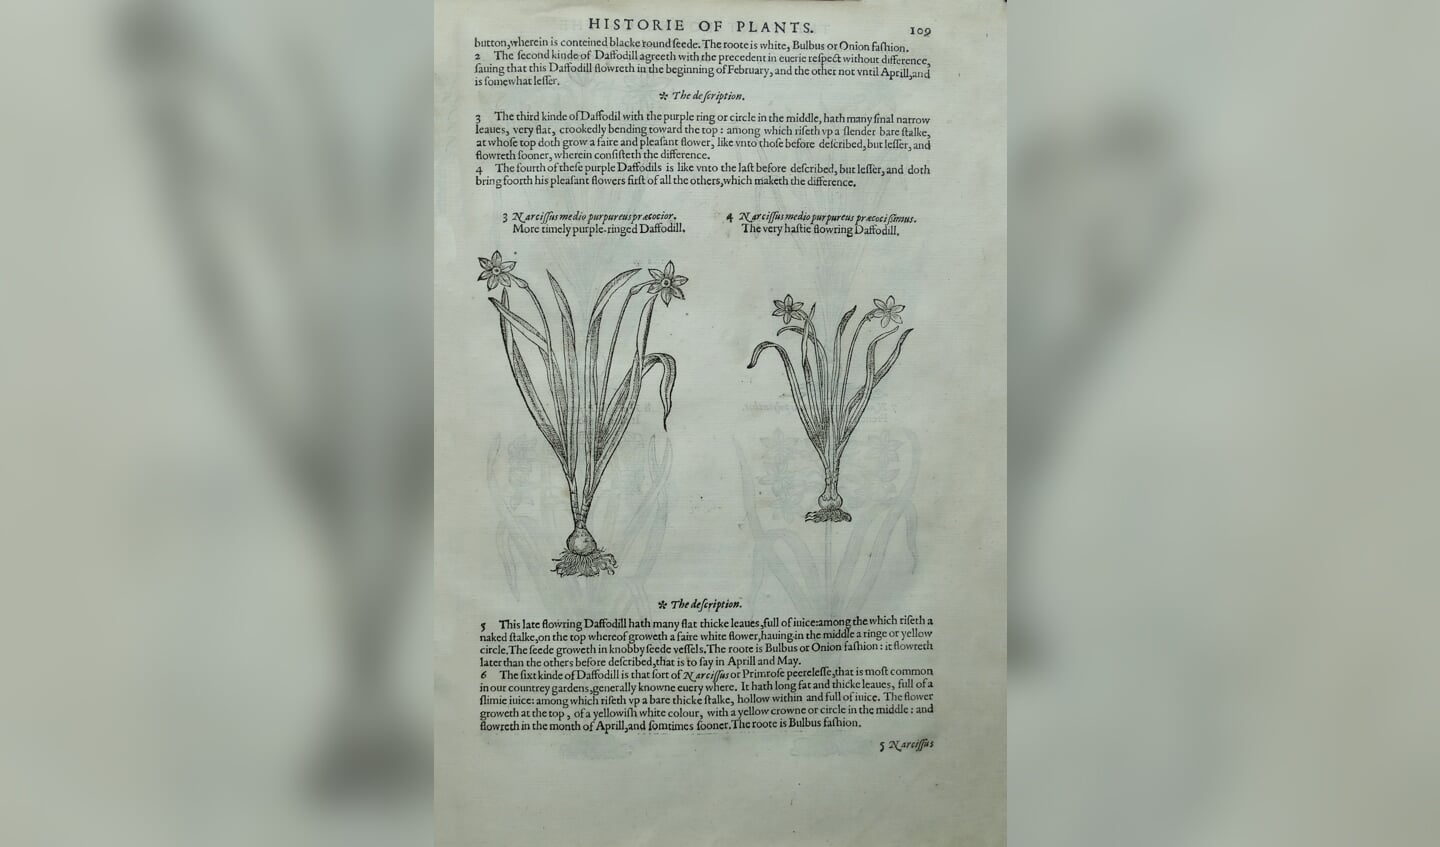 Bladzijde in het zeldzame exemplaar van The Herball uit 1597, met een beschrijving en afbeeldingen van narcissen.